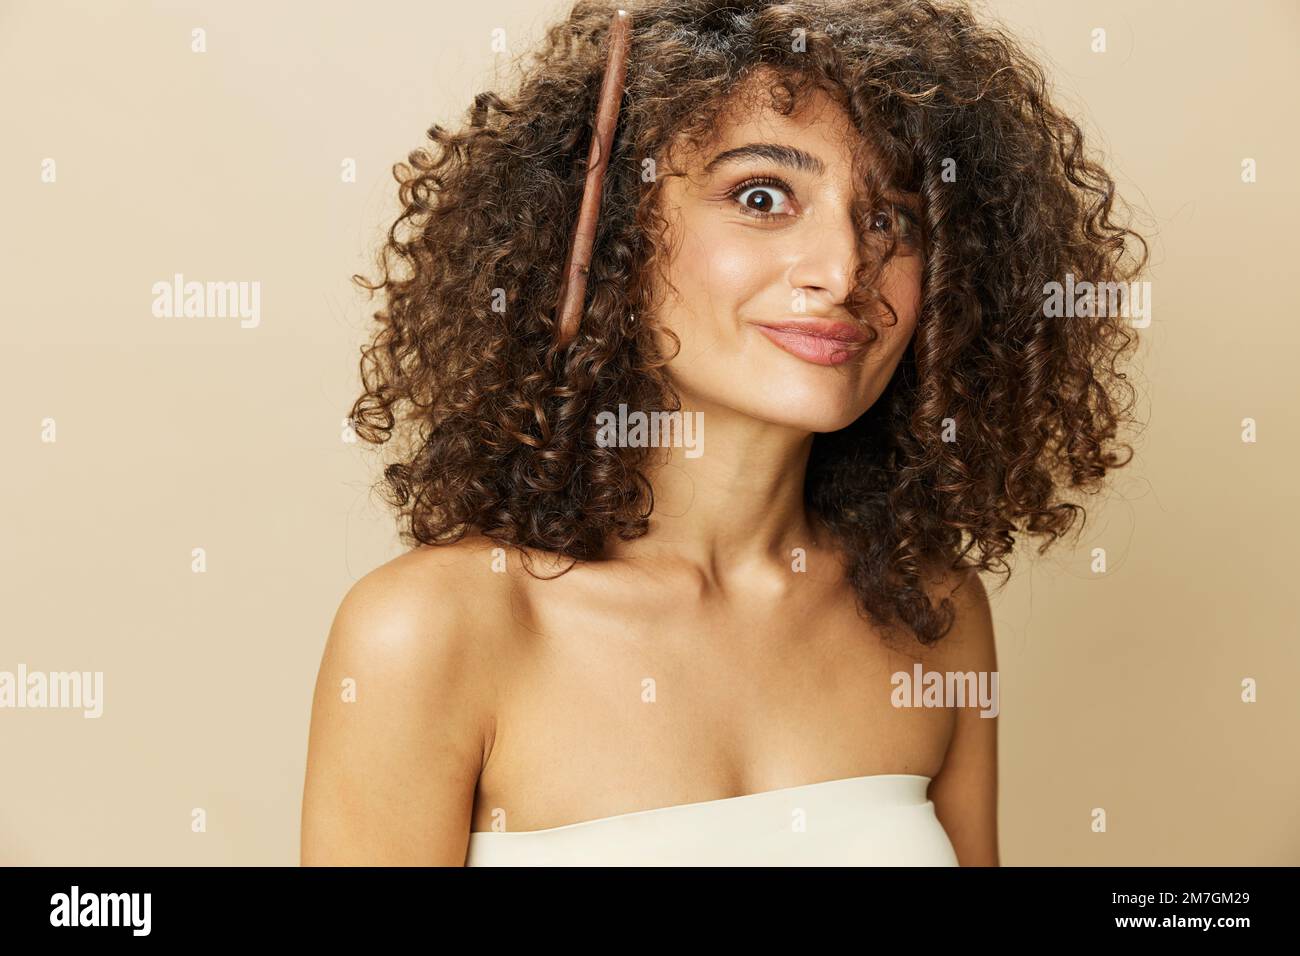 Femme peigne les cheveux bouclés afro avec peigne en bois, produits de coiffage de soins de beauté maison, perte de cheveux après Covid-19, sourire sur fond beige Banque D'Images